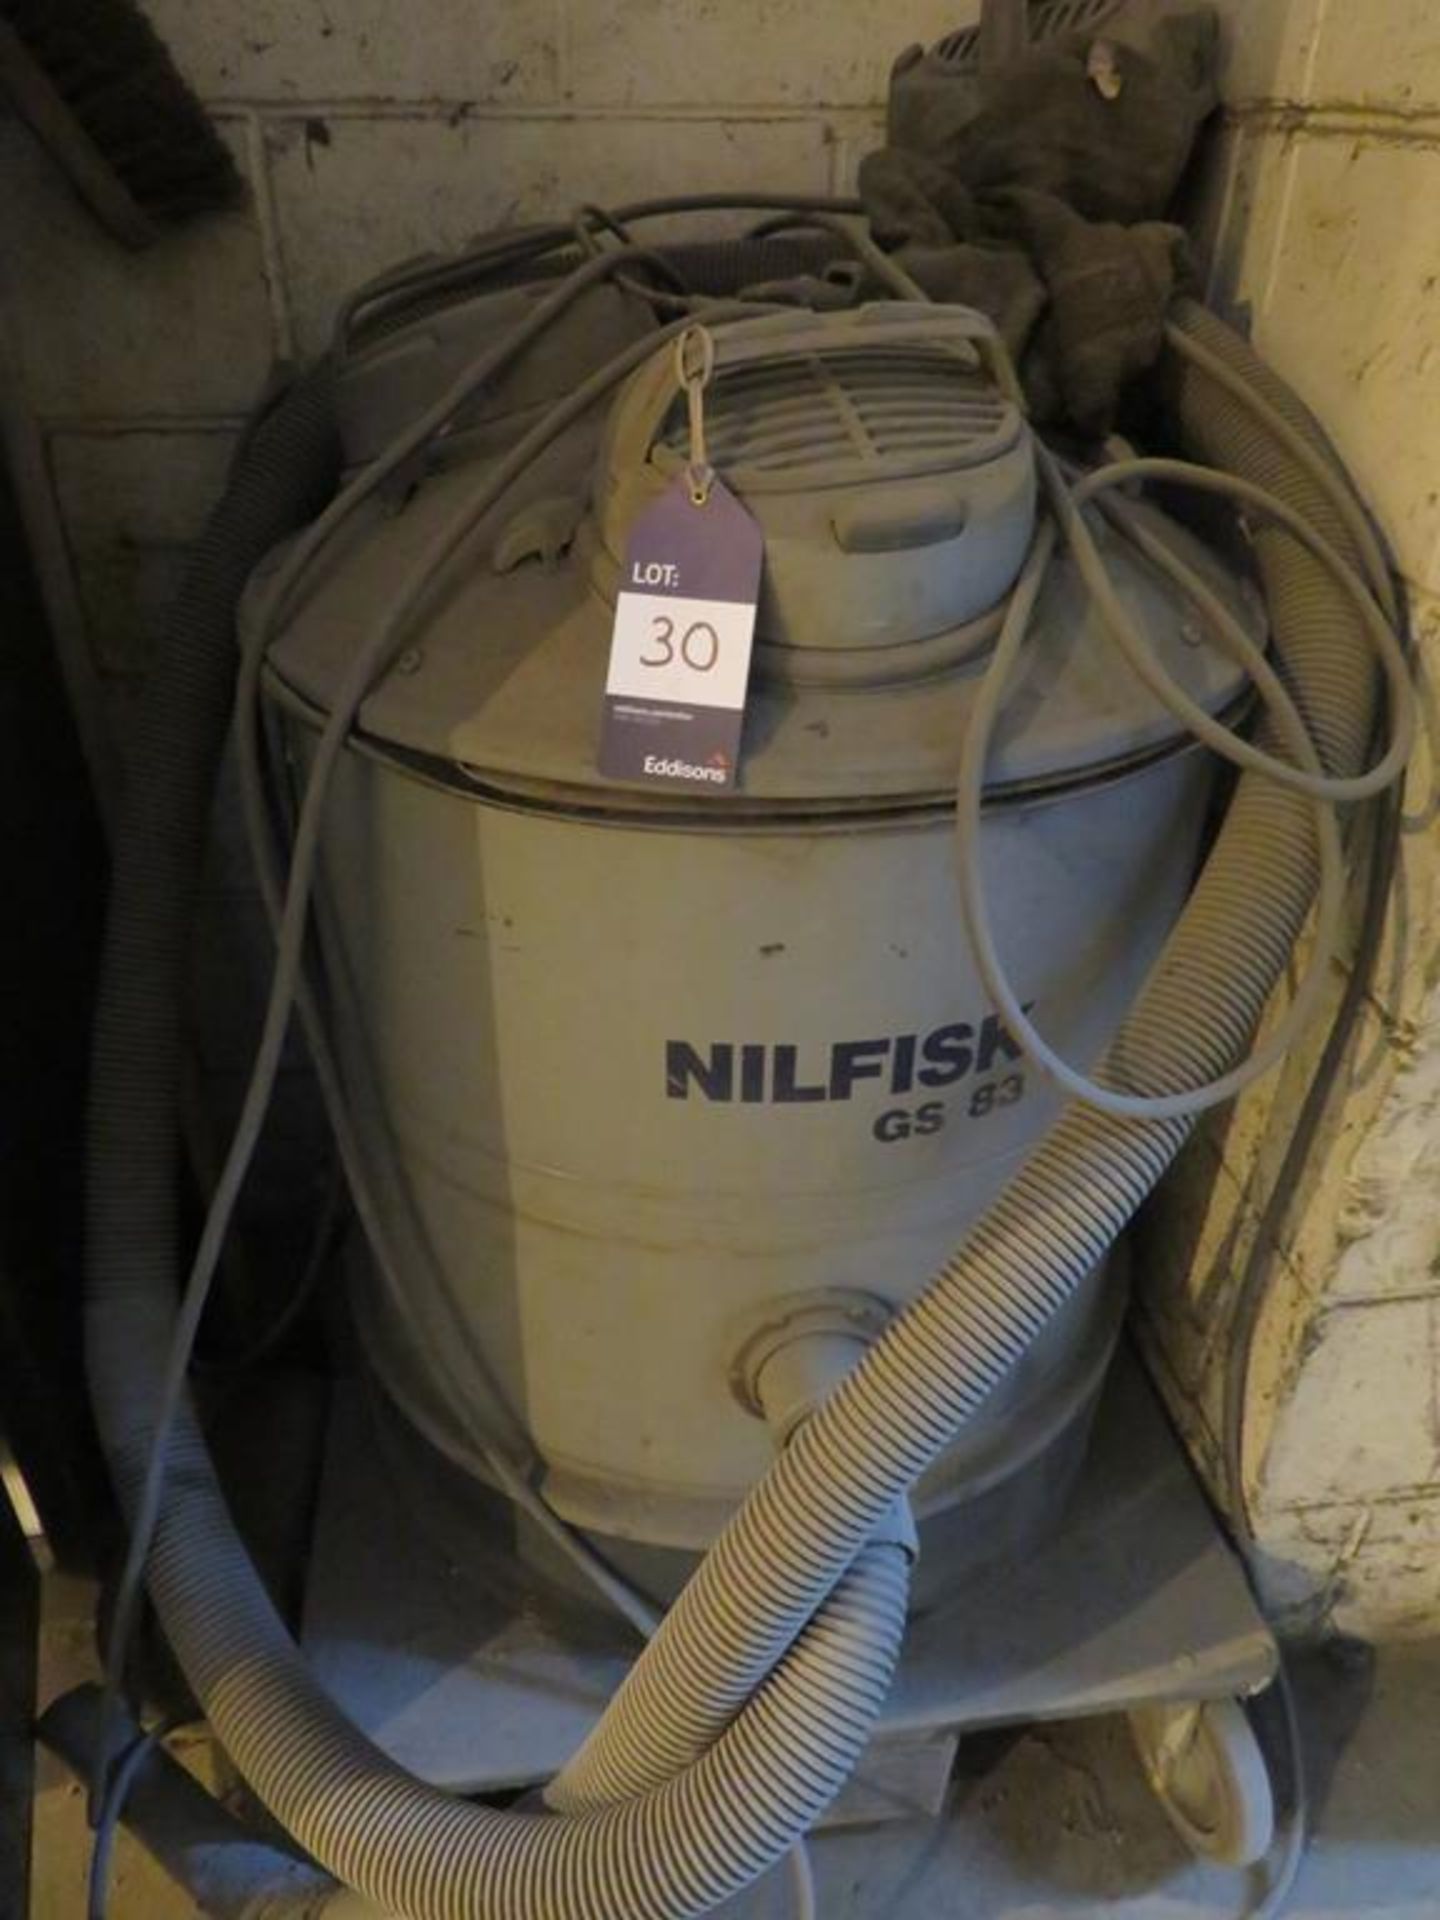 Nilfisk GS83 industrial vacuum cleaner